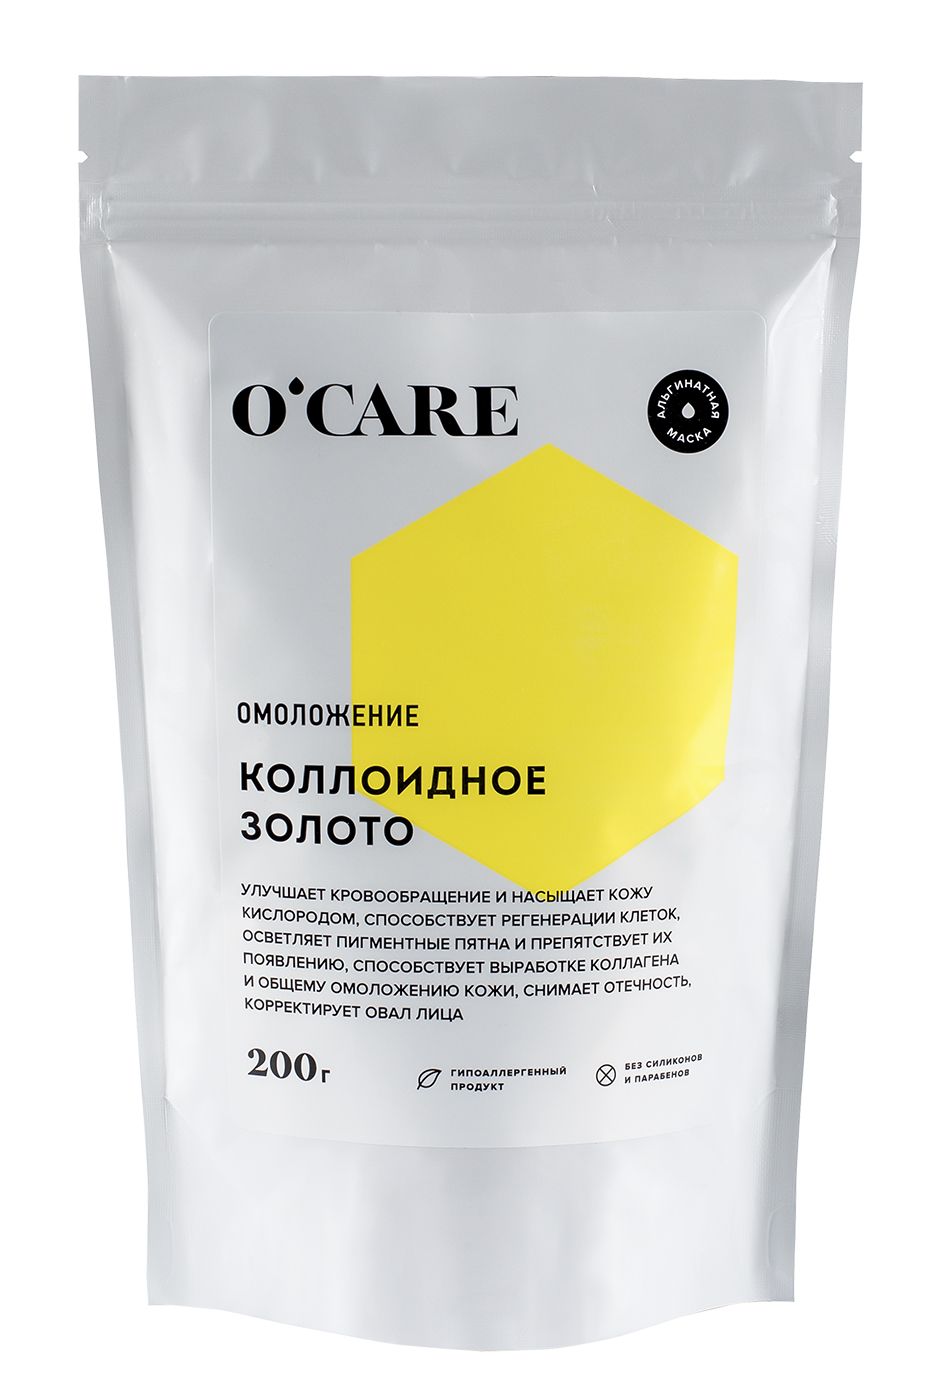 O'Care - Альгинатная маска с коллоидным золотом 200 г